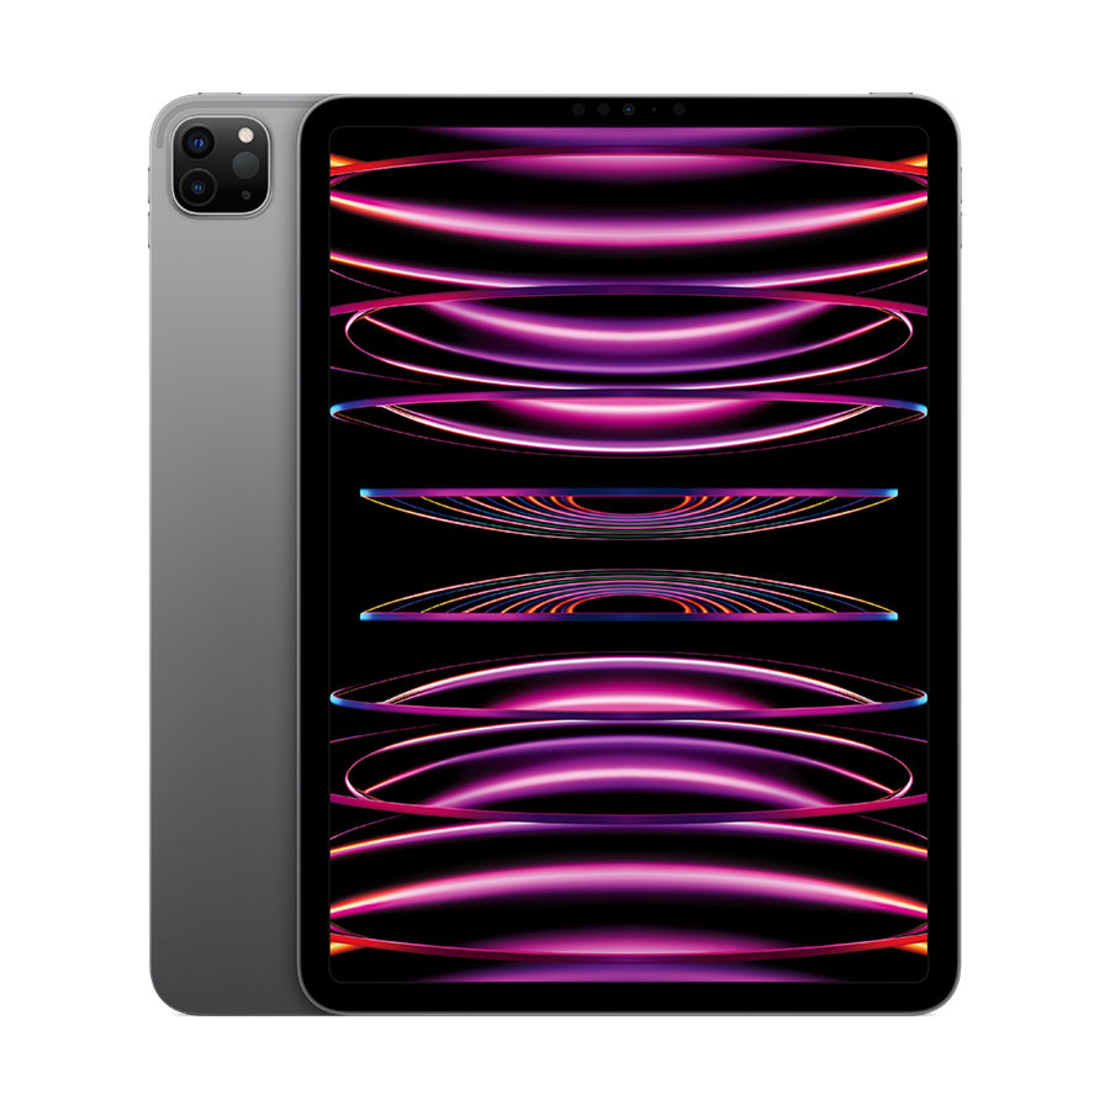 11inch iPad Pro Wi-Fi 2TB (4th Gen)